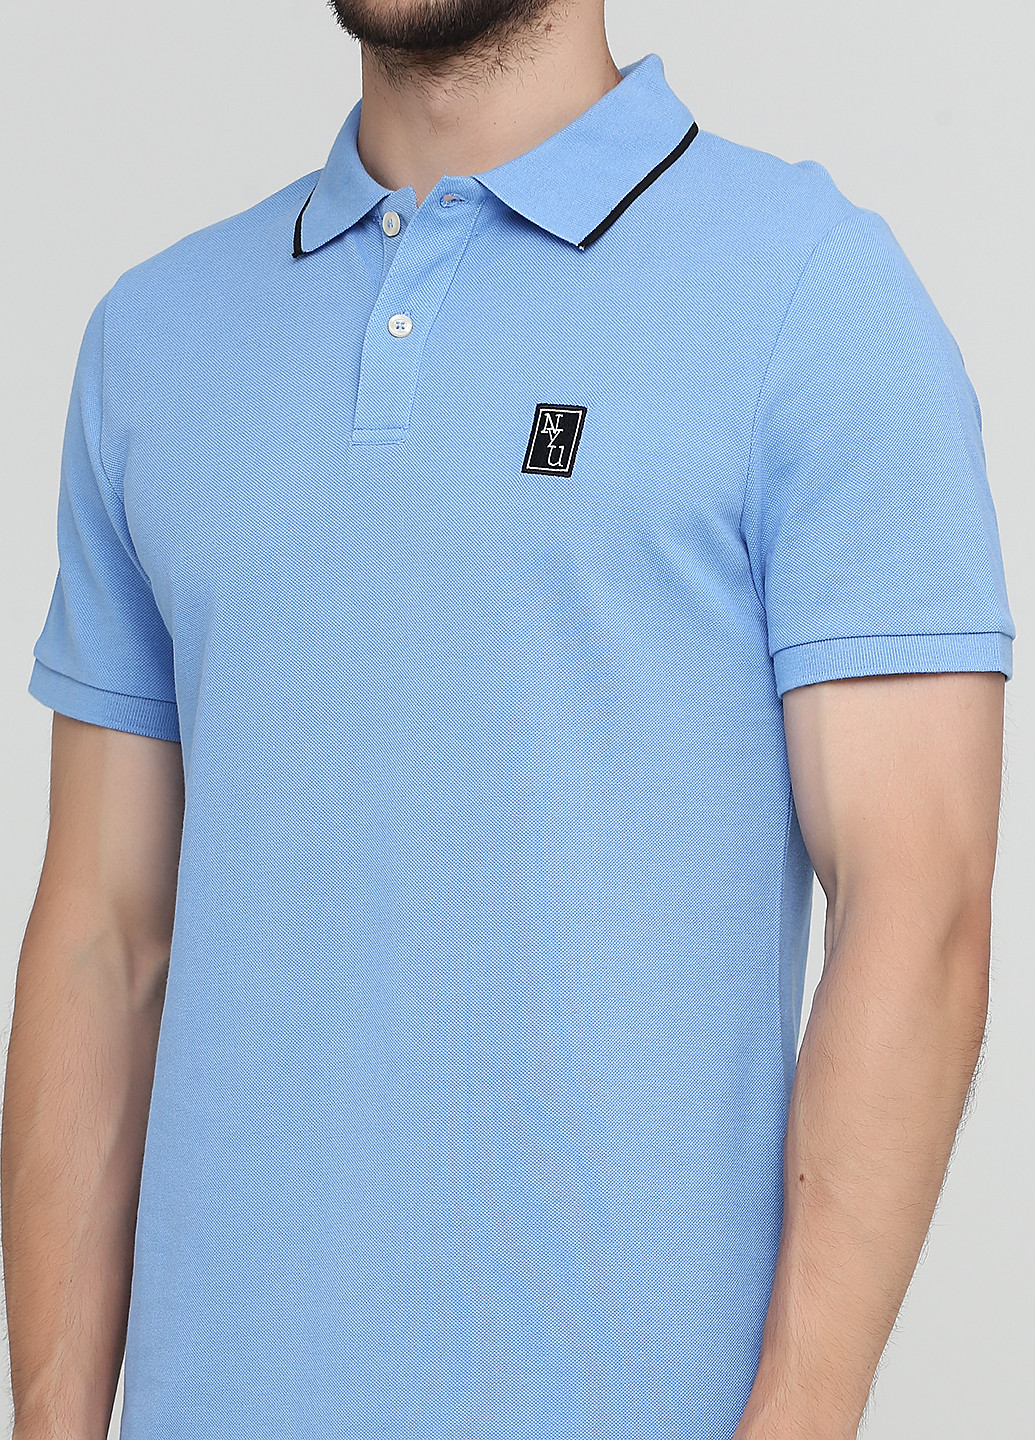 Темно-голубой футболка-поло для мужчин H&M однотонная